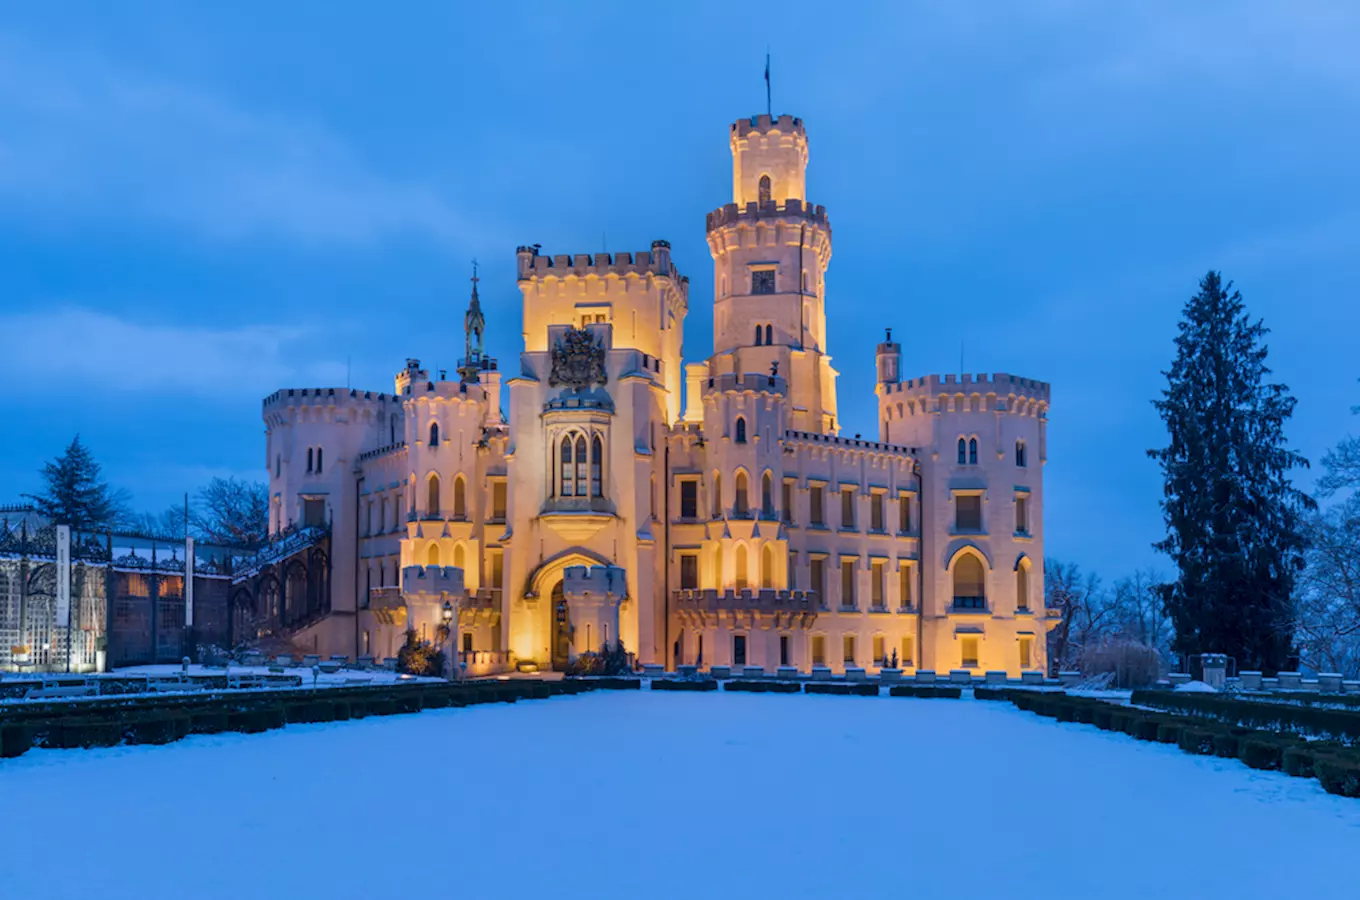 Hrady a zámky v jižních Čechách lákají na zimní prohlídky i v lednu a únoru